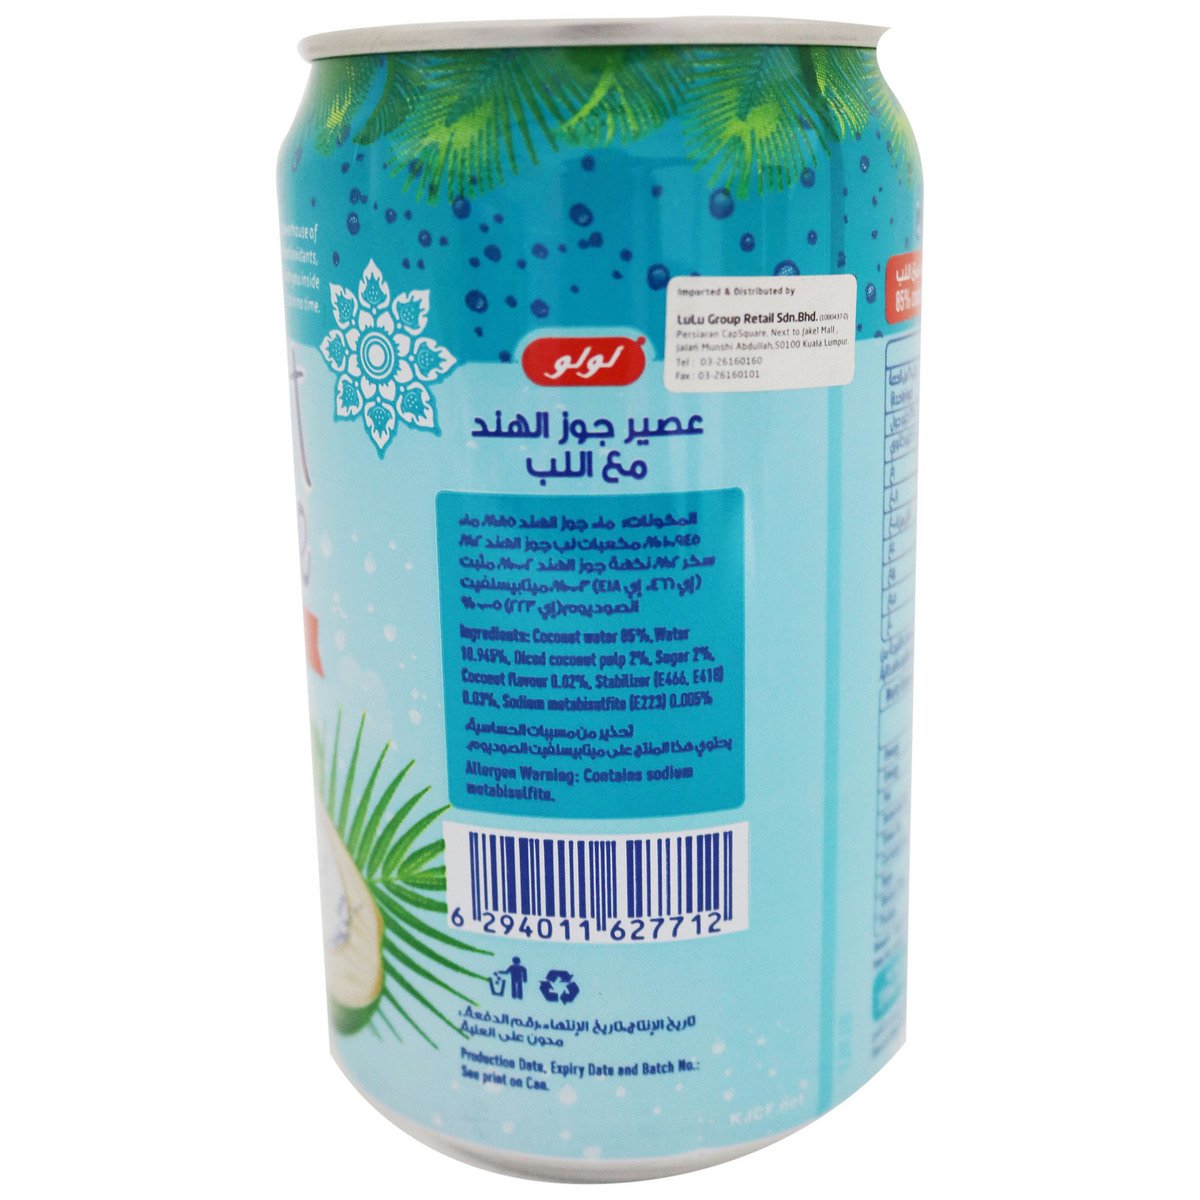 Lulu Coconut Juice With Pulp 310ml